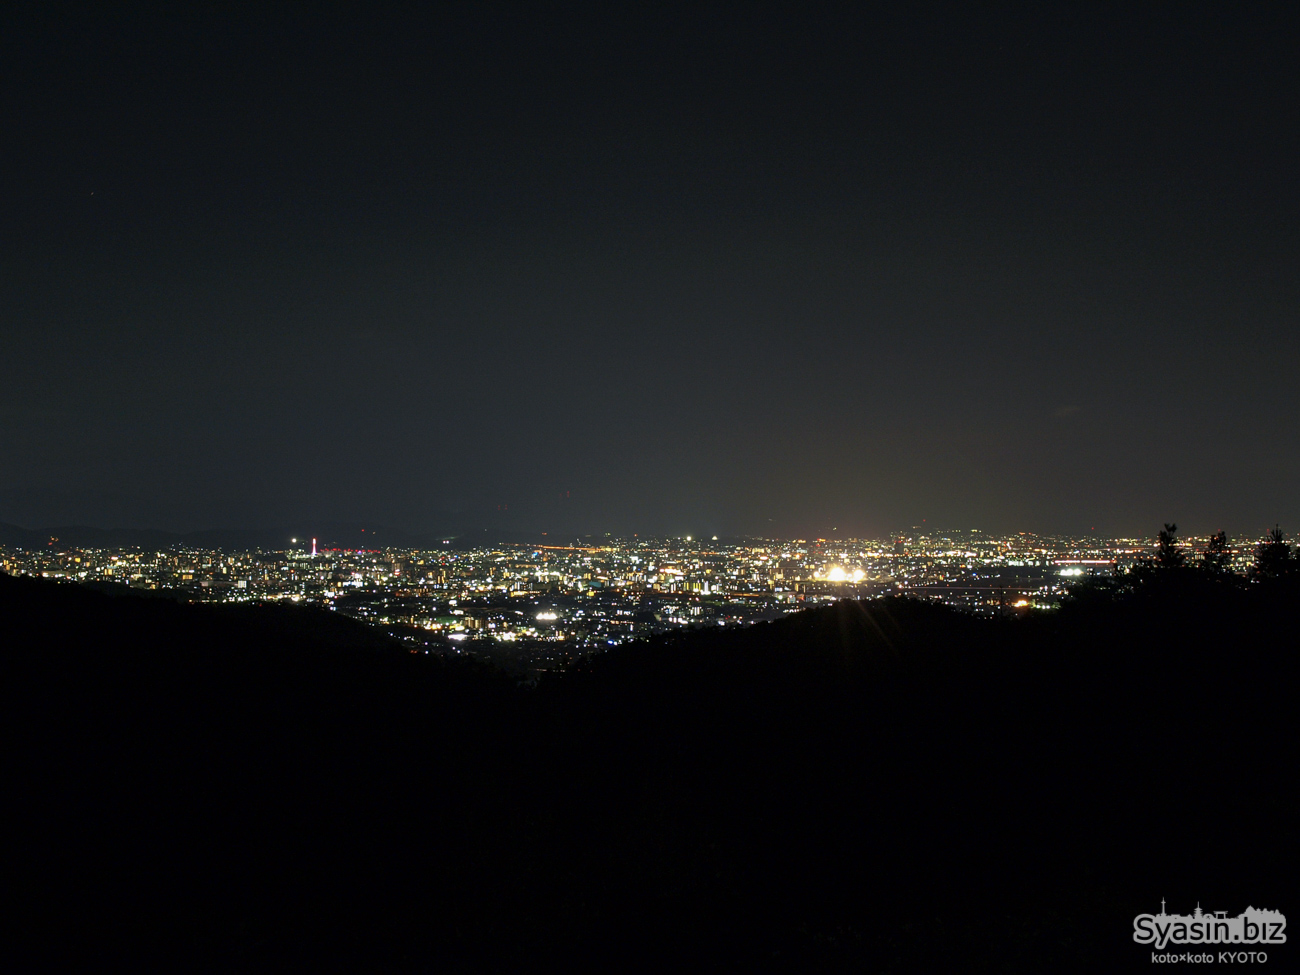 嵐山高雄パークウェイ 菖蒲ヶ丘展望台 夜景